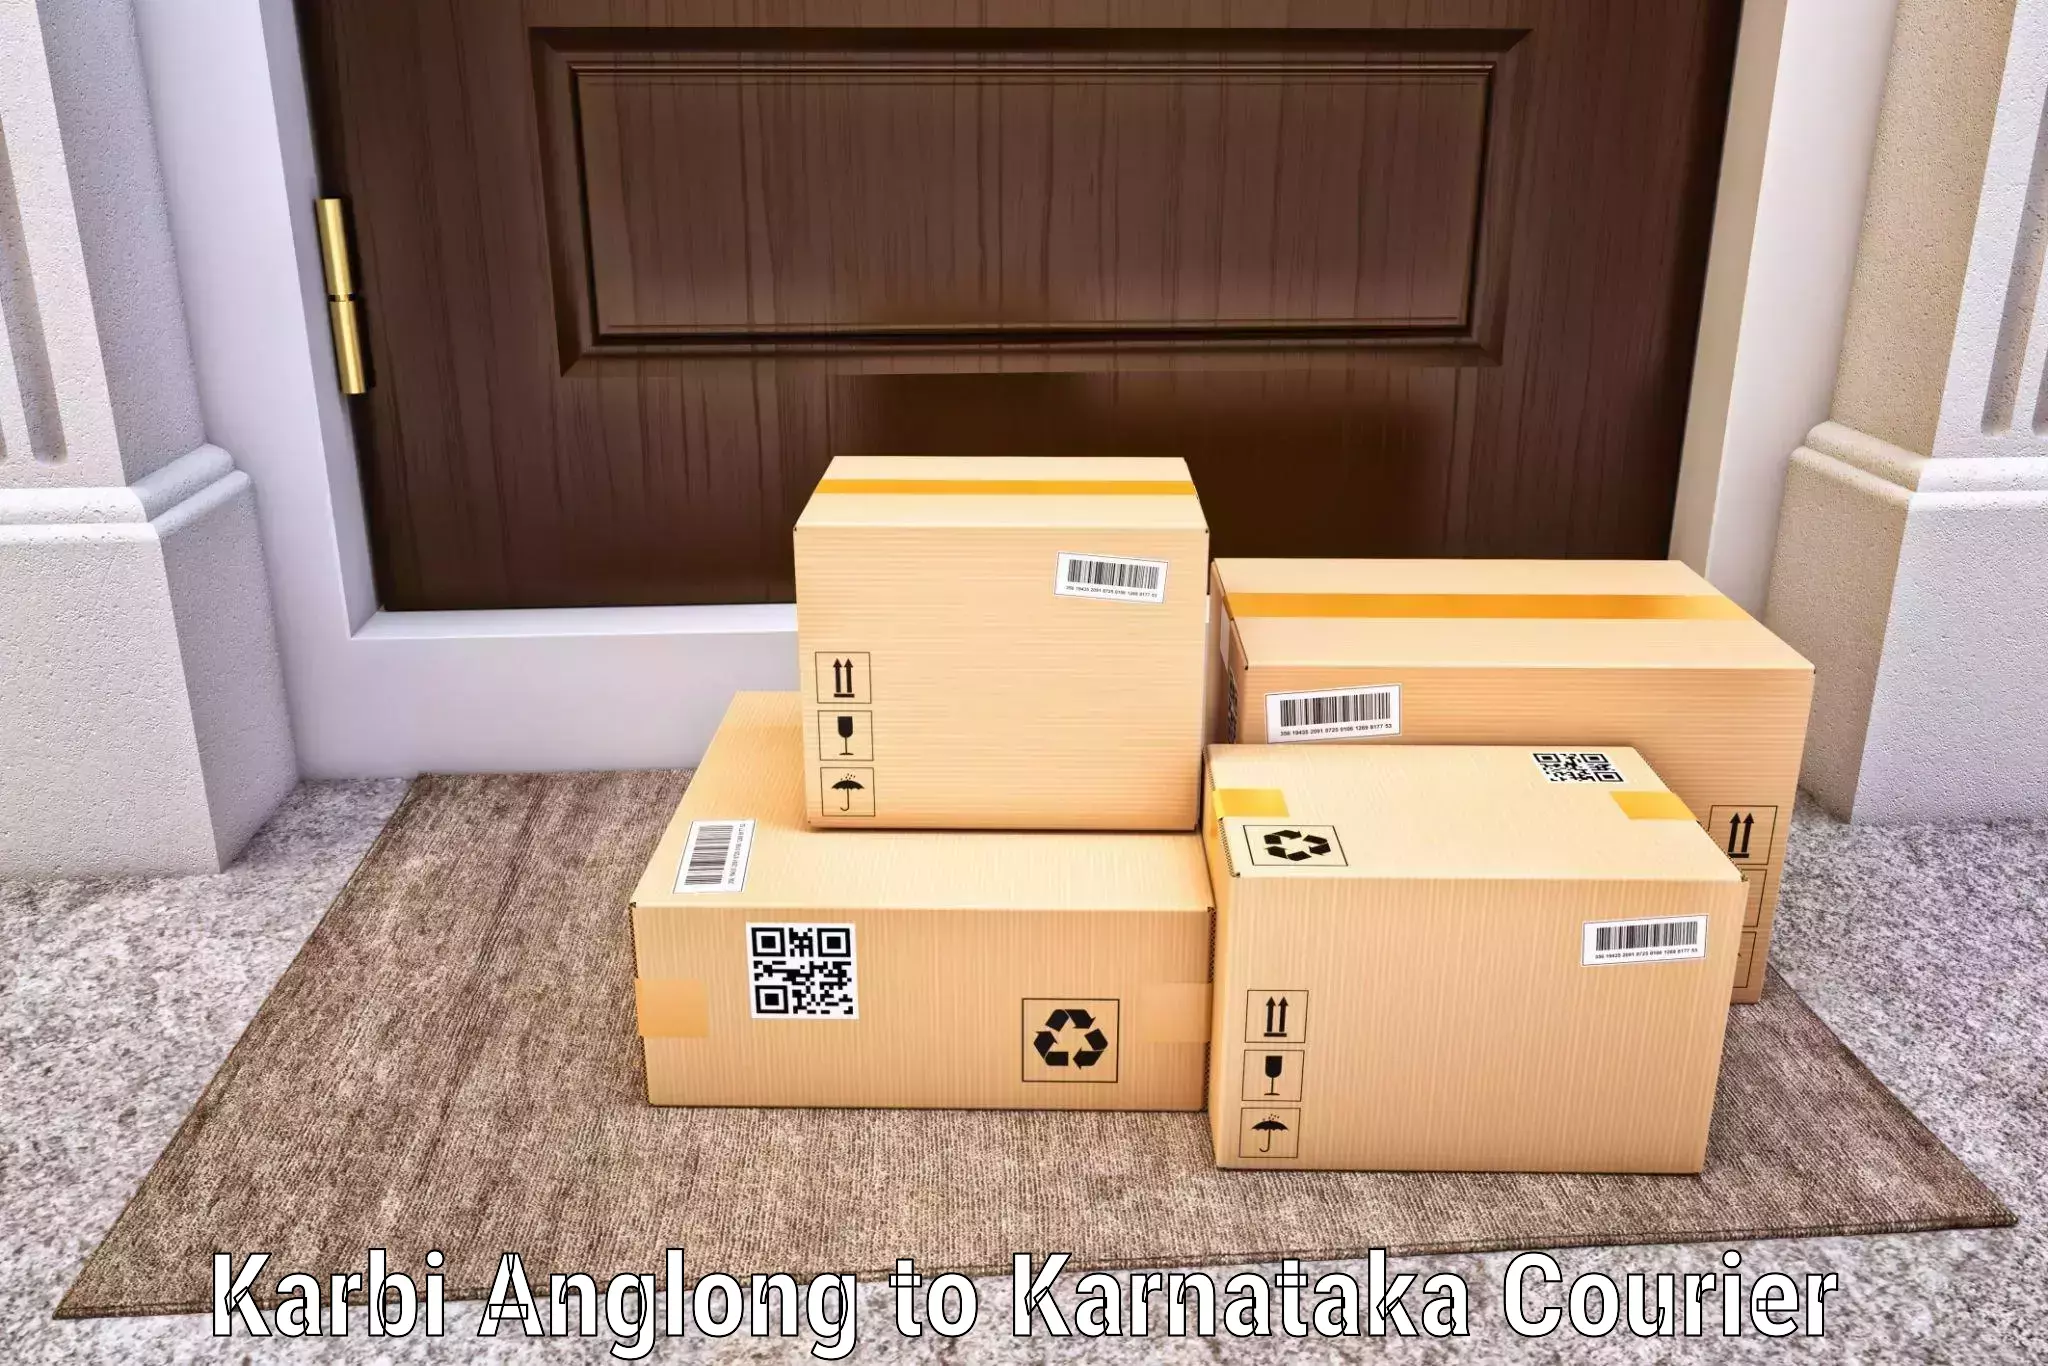 Professional courier services Karbi Anglong to Aland Kalaburagi